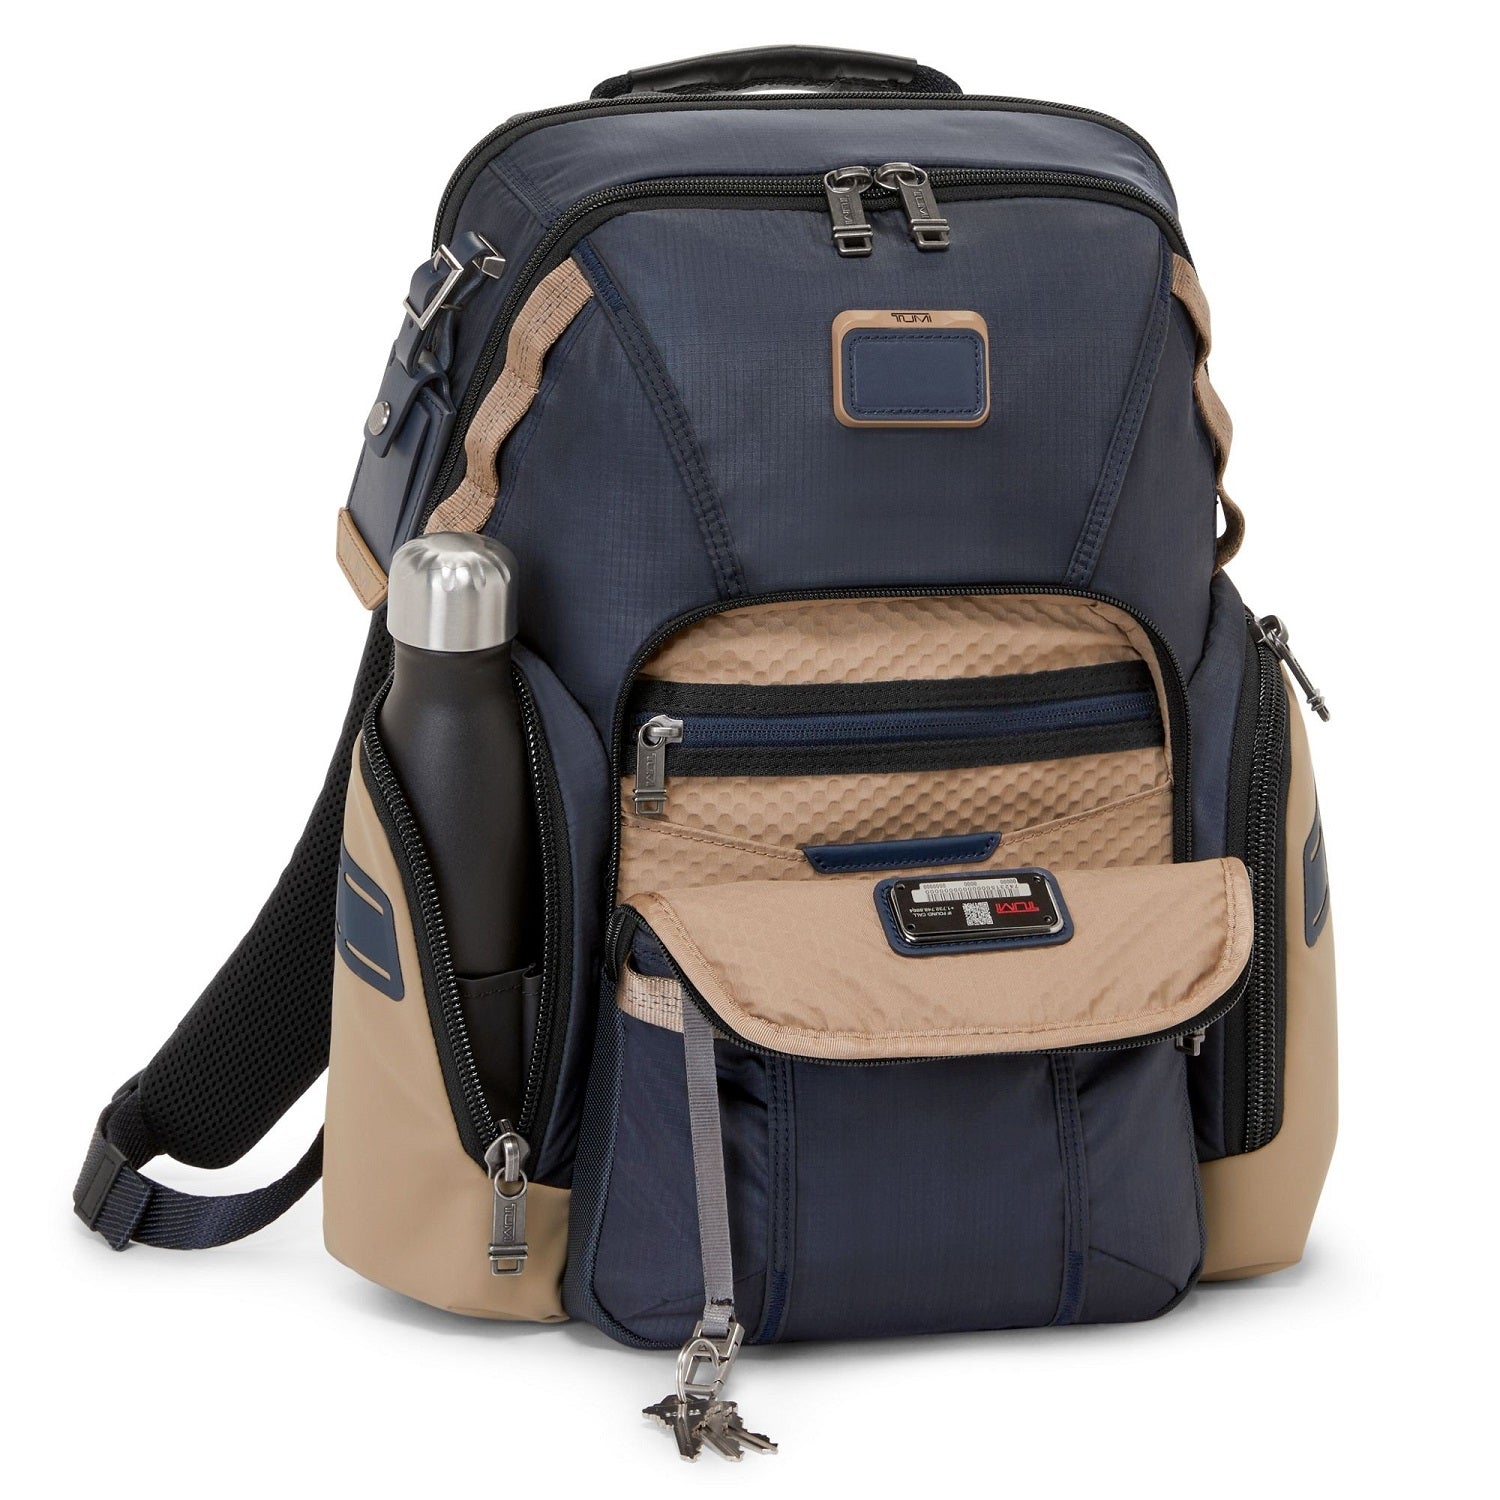 Tumi Backpacks for sale in Ogden, Utah | Facebook Marketplace | Facebook